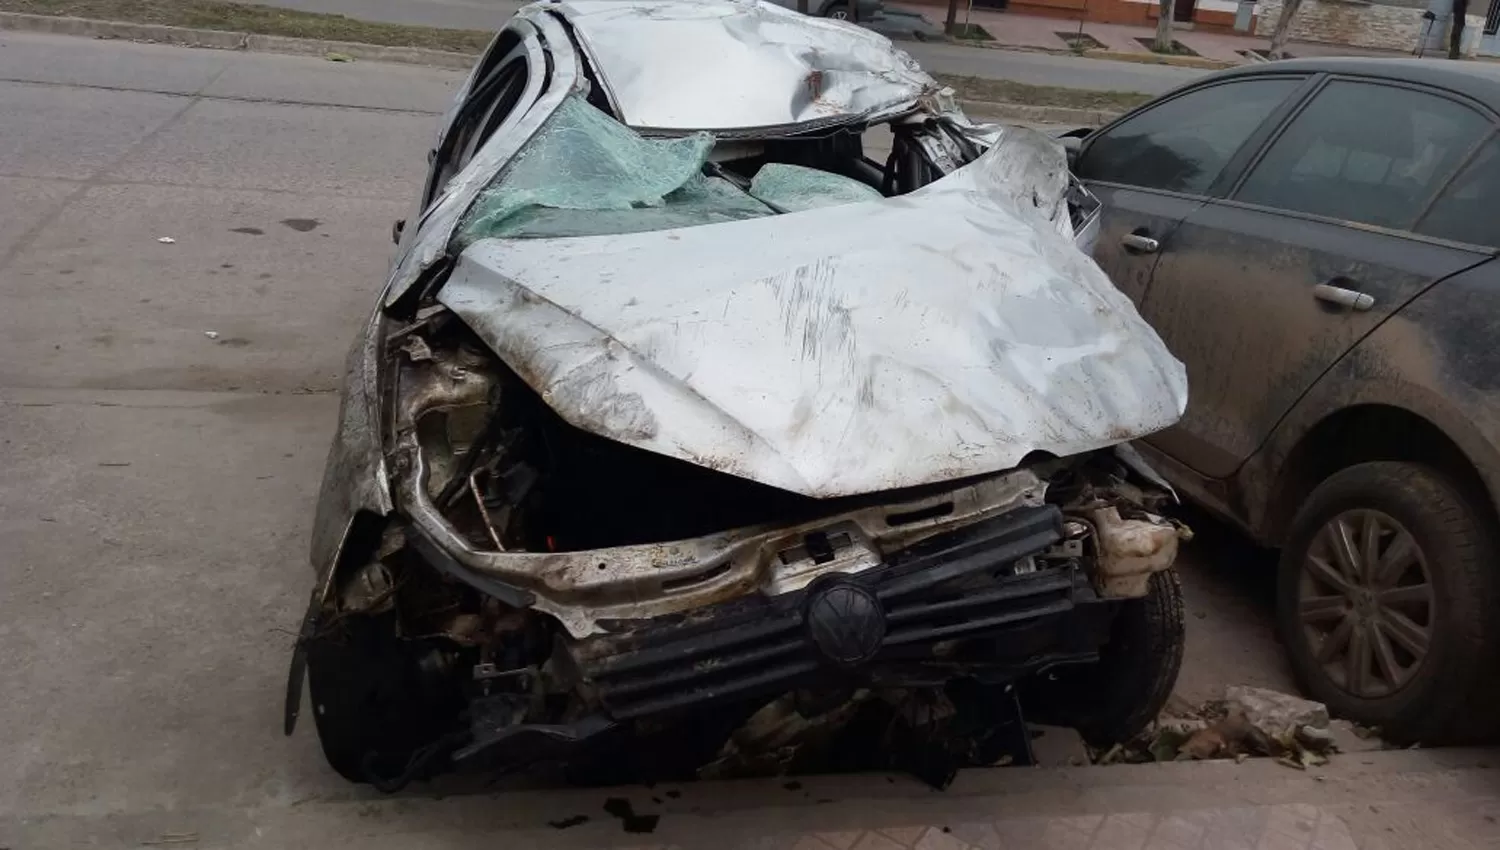 VUELCO. Se desconocen las causas del accidente, que provocó una muerte. FOTO GENTILEZA DE DIARIOPANORAMA.COM